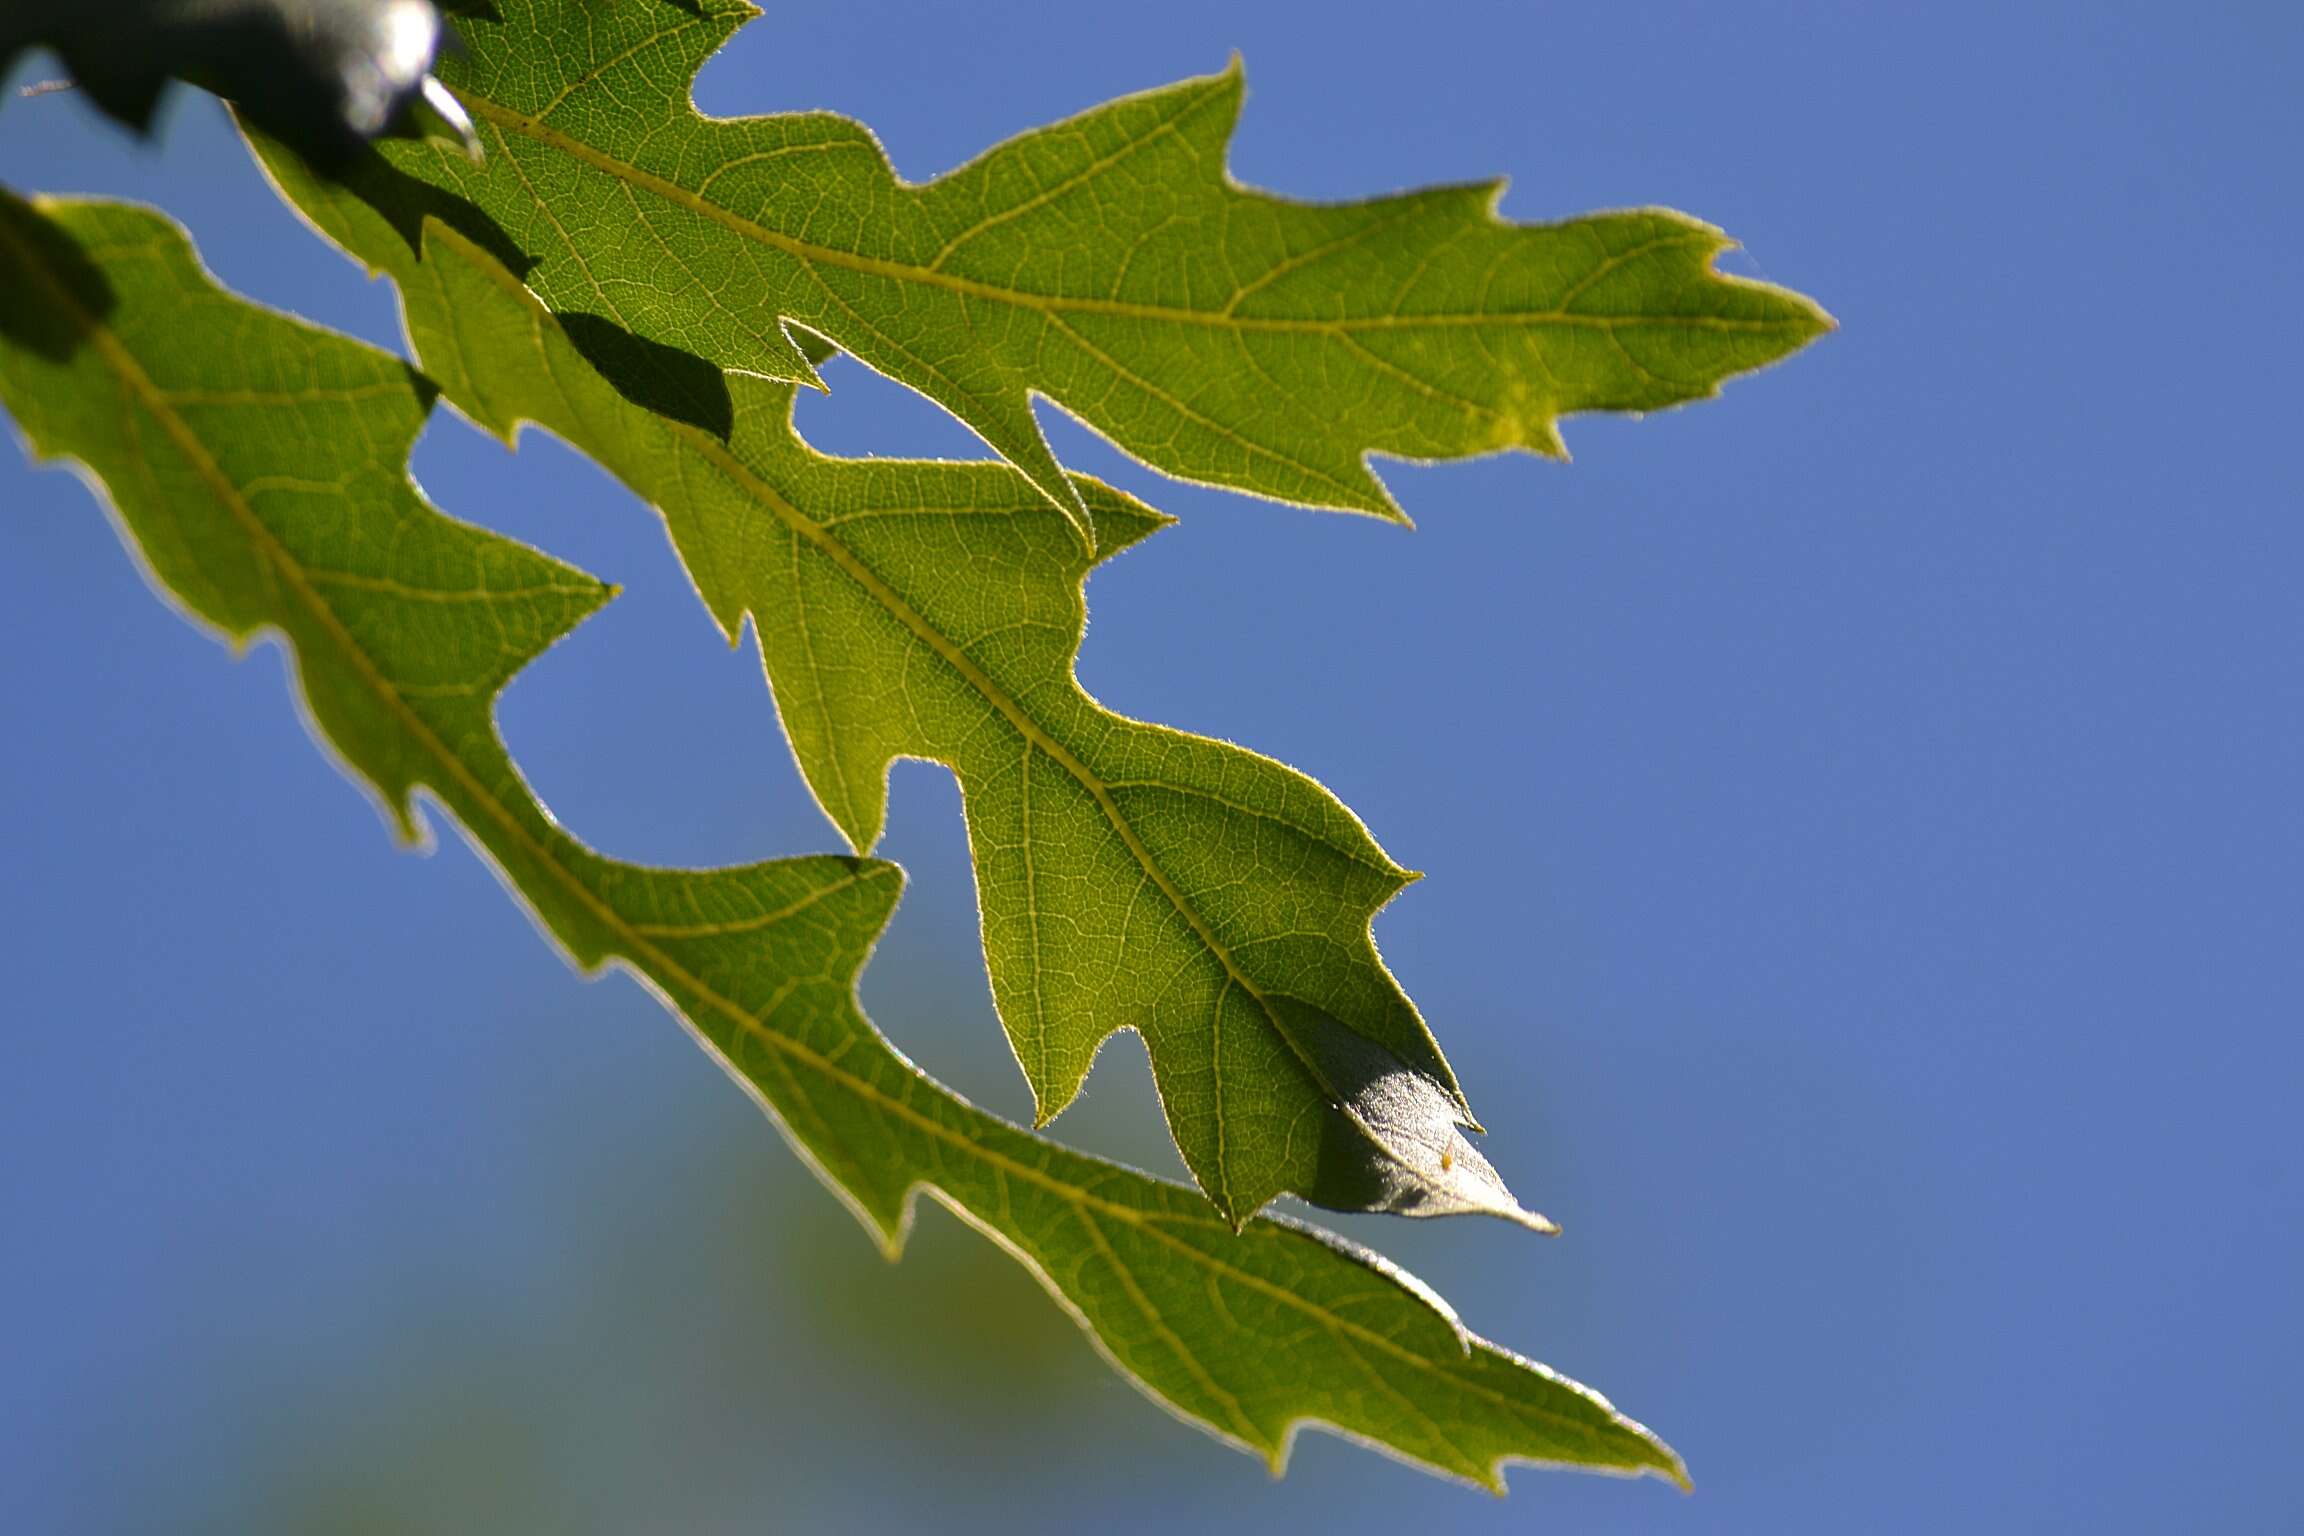 Image of Lebanon Oak